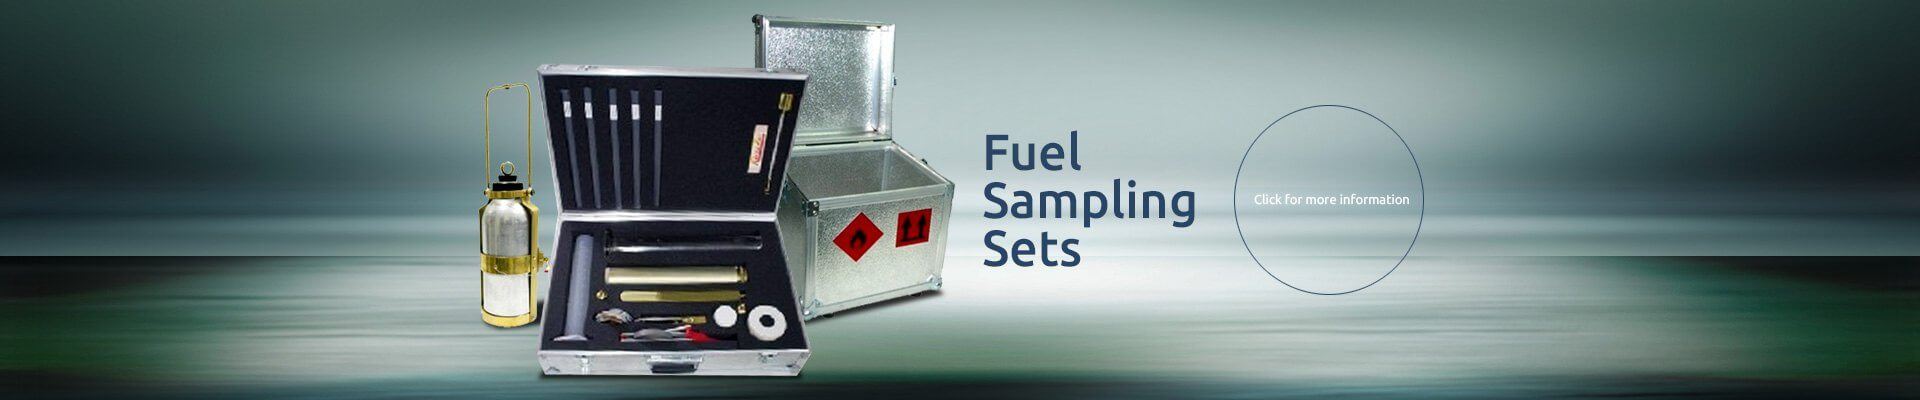 Fuel Sampling Sets